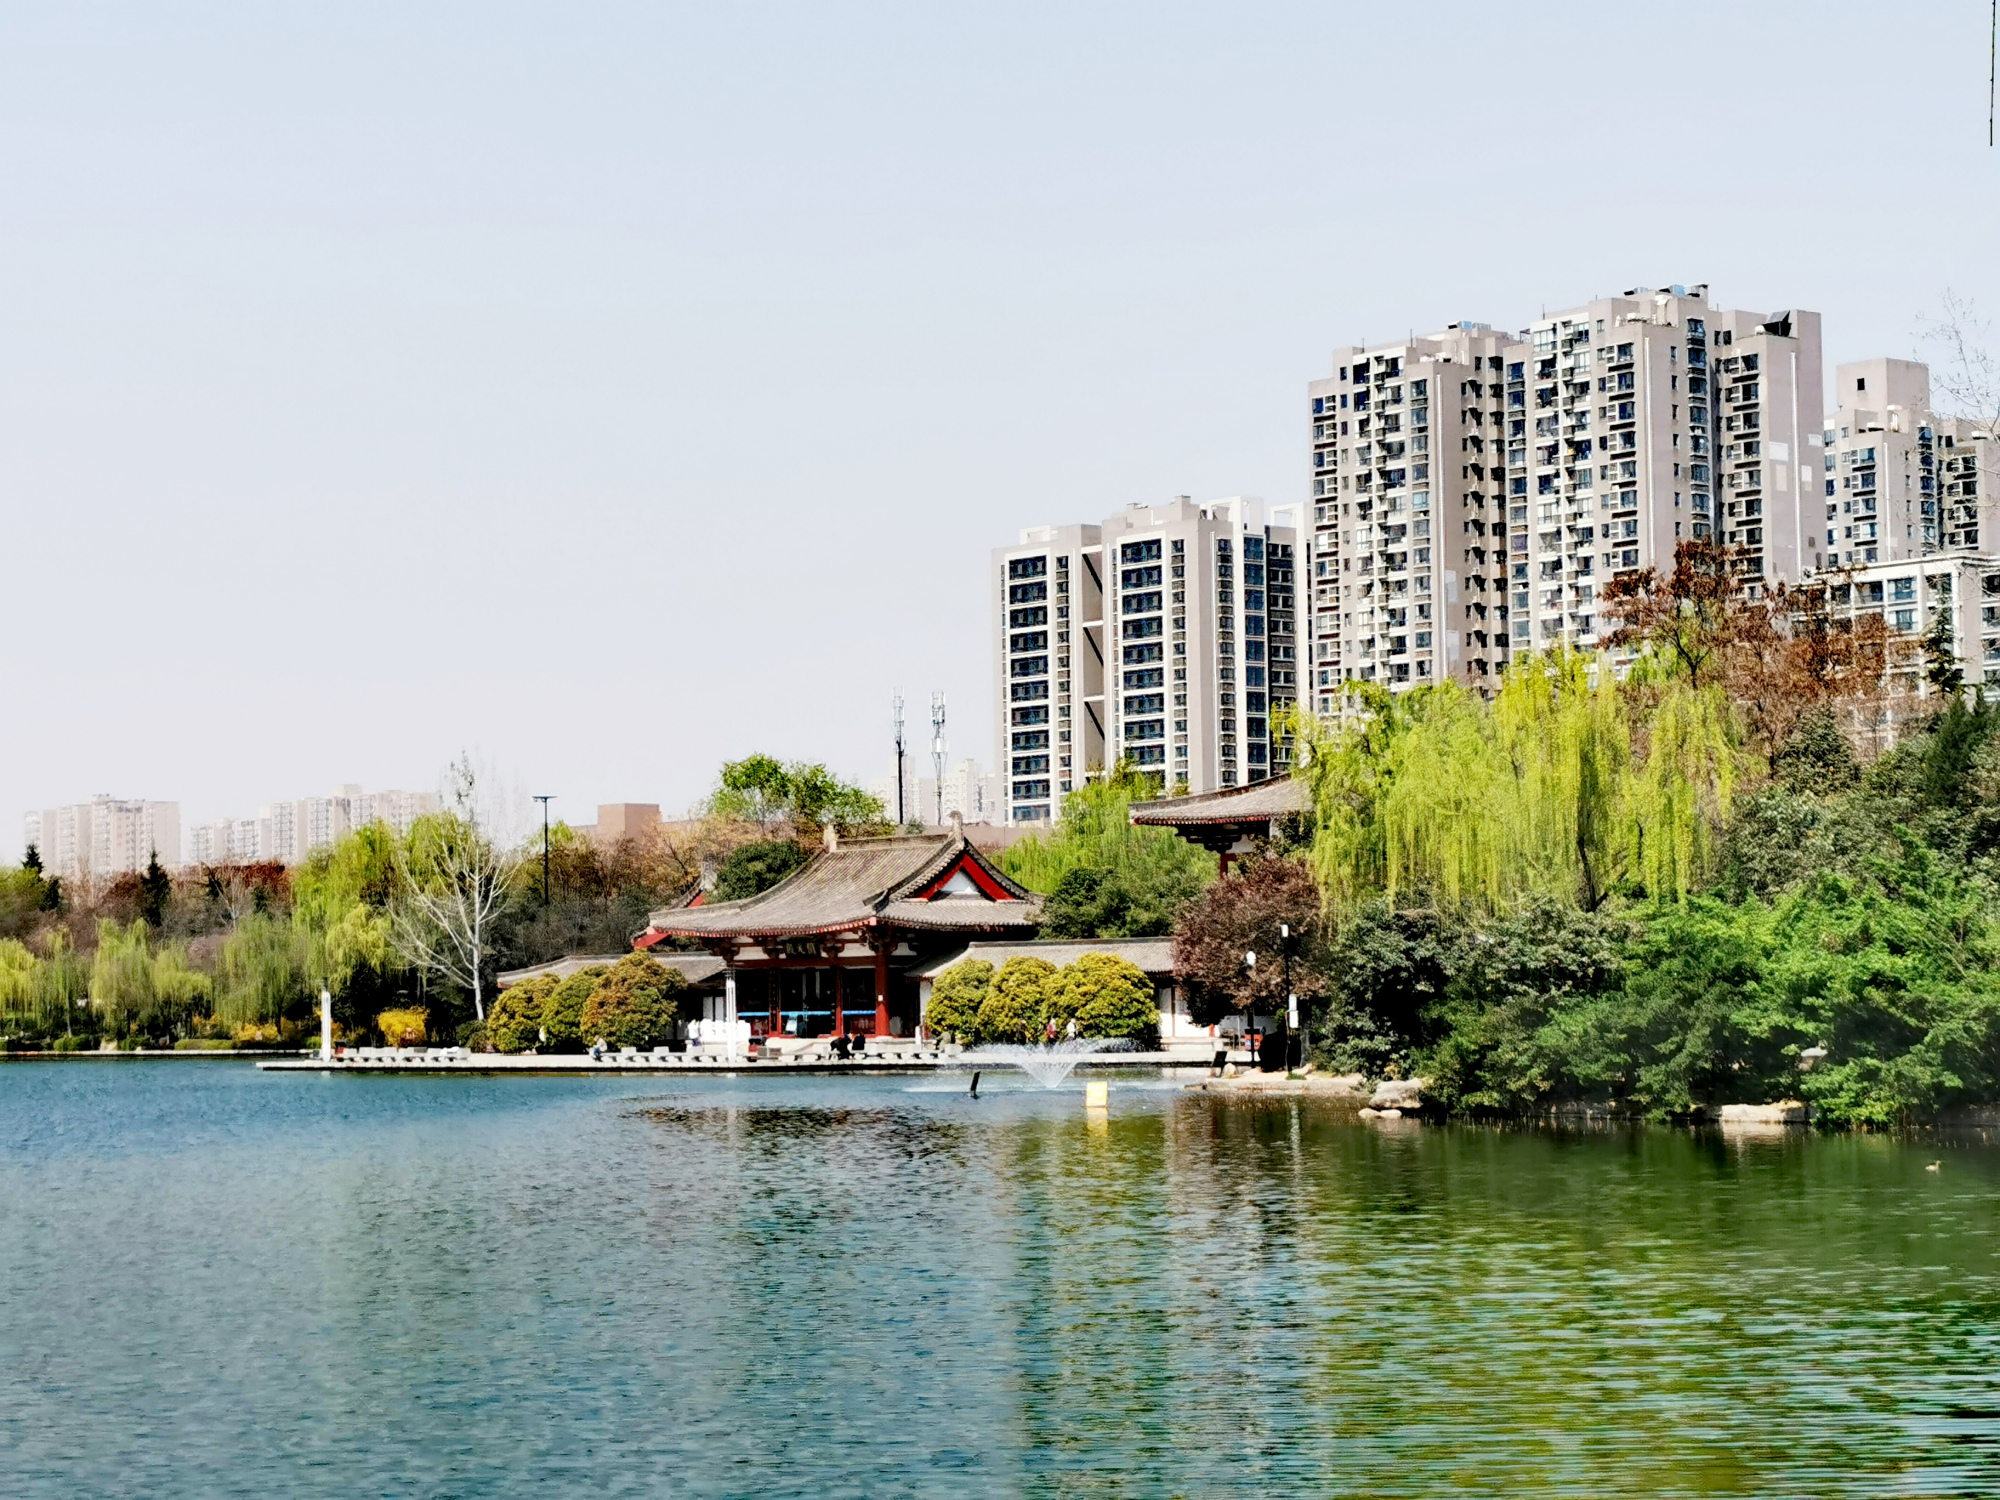 丰庆公园,风景如画